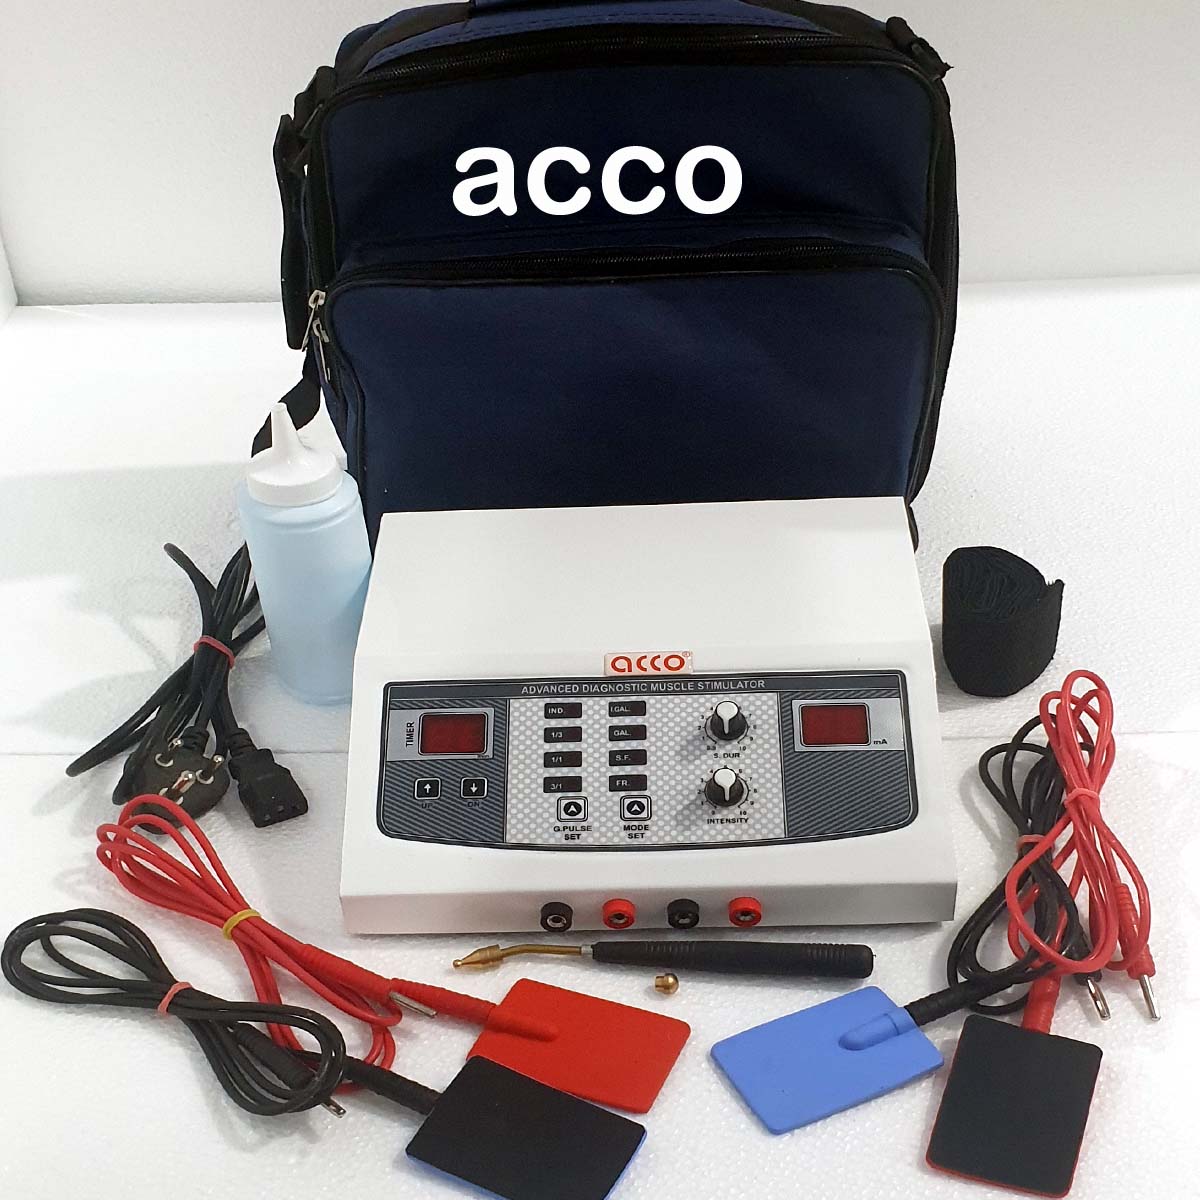 acco Muscle Stimulator Machine (Diagnostic - G, IG,F,SF)